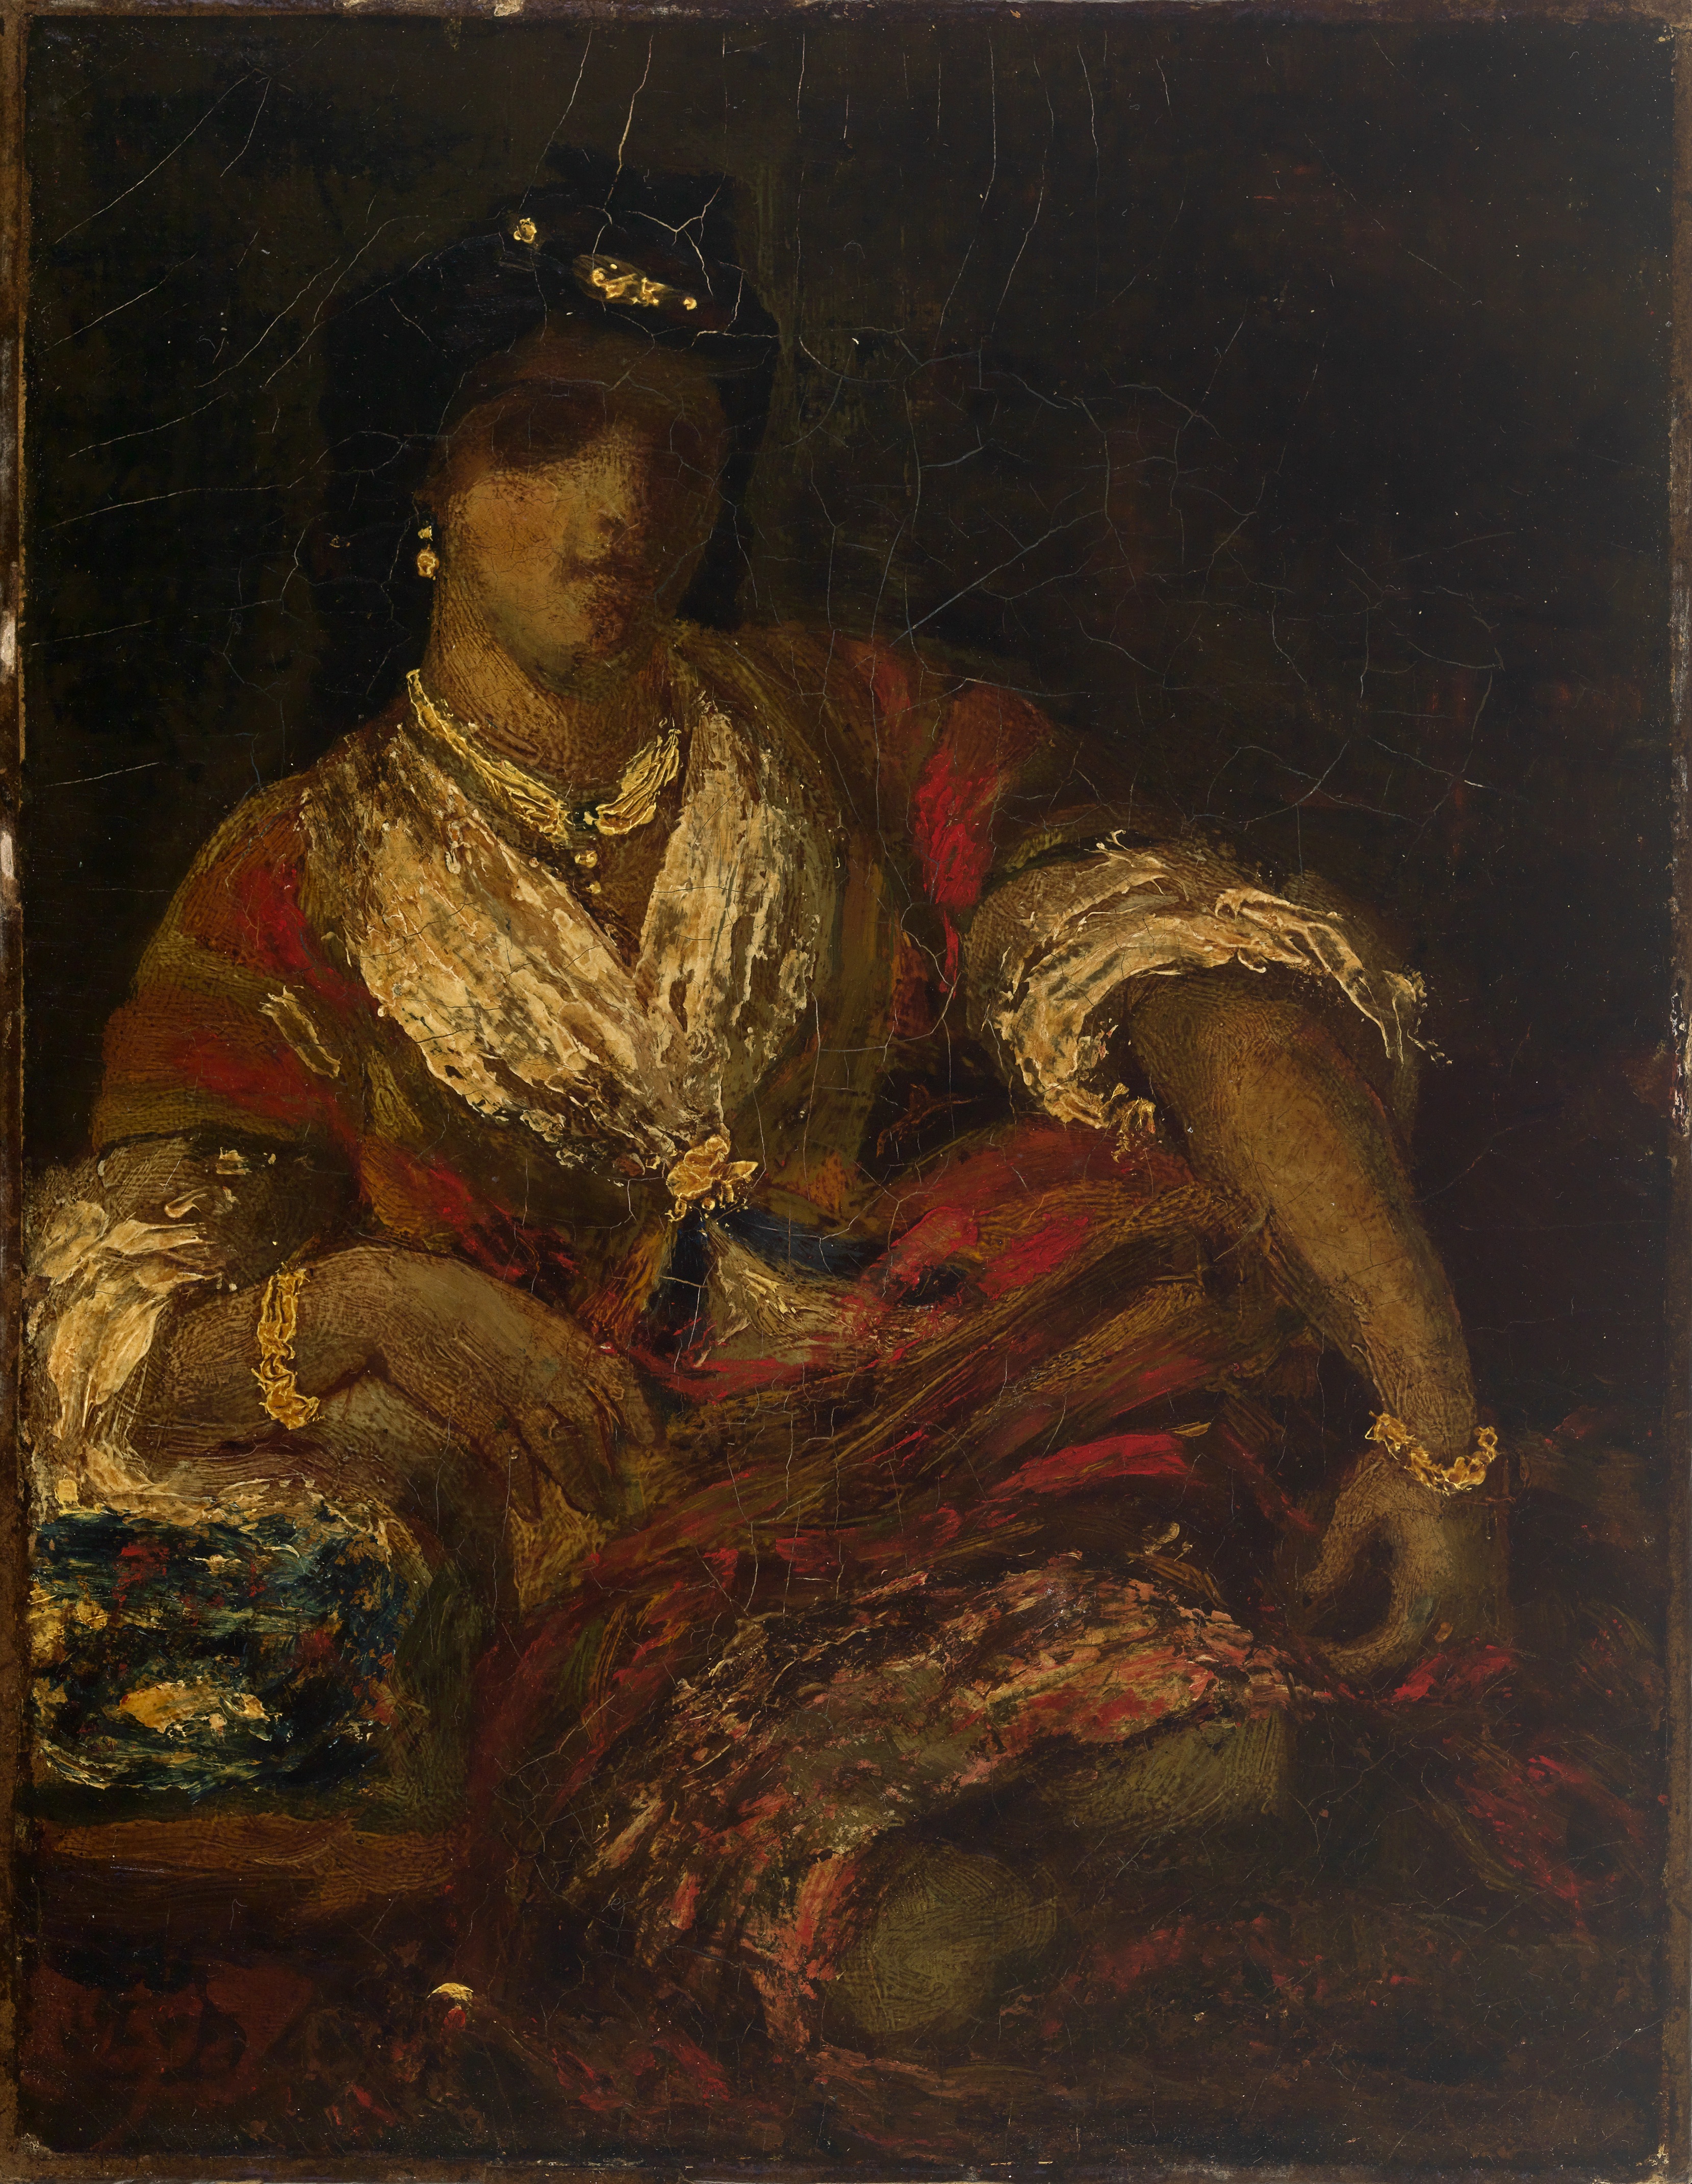 Eugène Delacroix, Algérienne, n.d., Oil on canvas, 24.4475 x 19.05 cm, Smith College Museum of Art, SC 1921:11-1, Gift of Colonel Walter Scott<br />
